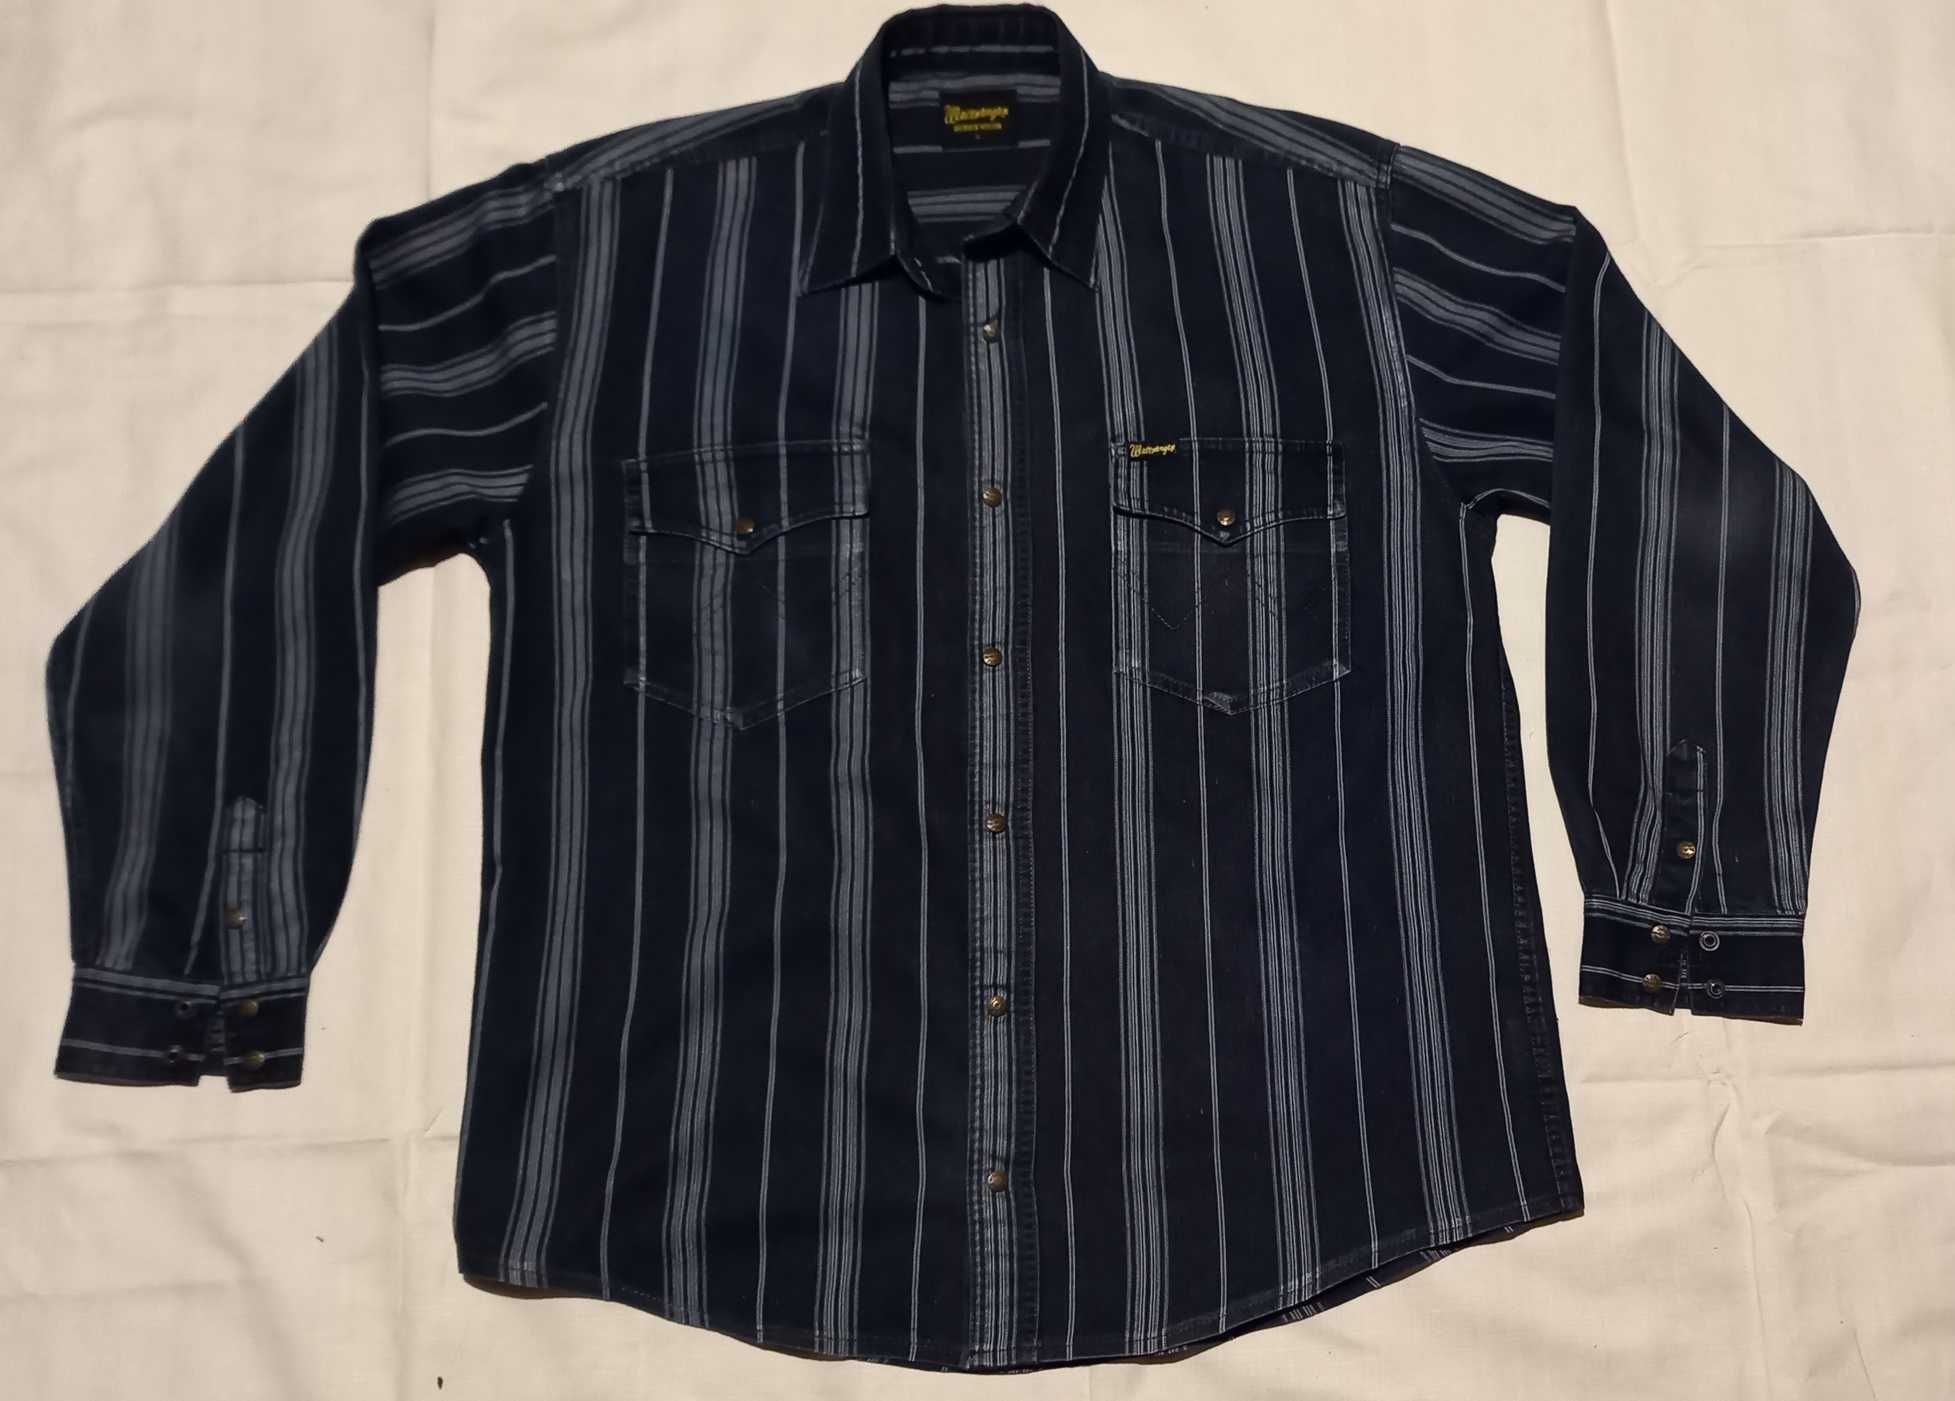 Турецкая джинсовая рубашка Westrenger размер ХL (54)